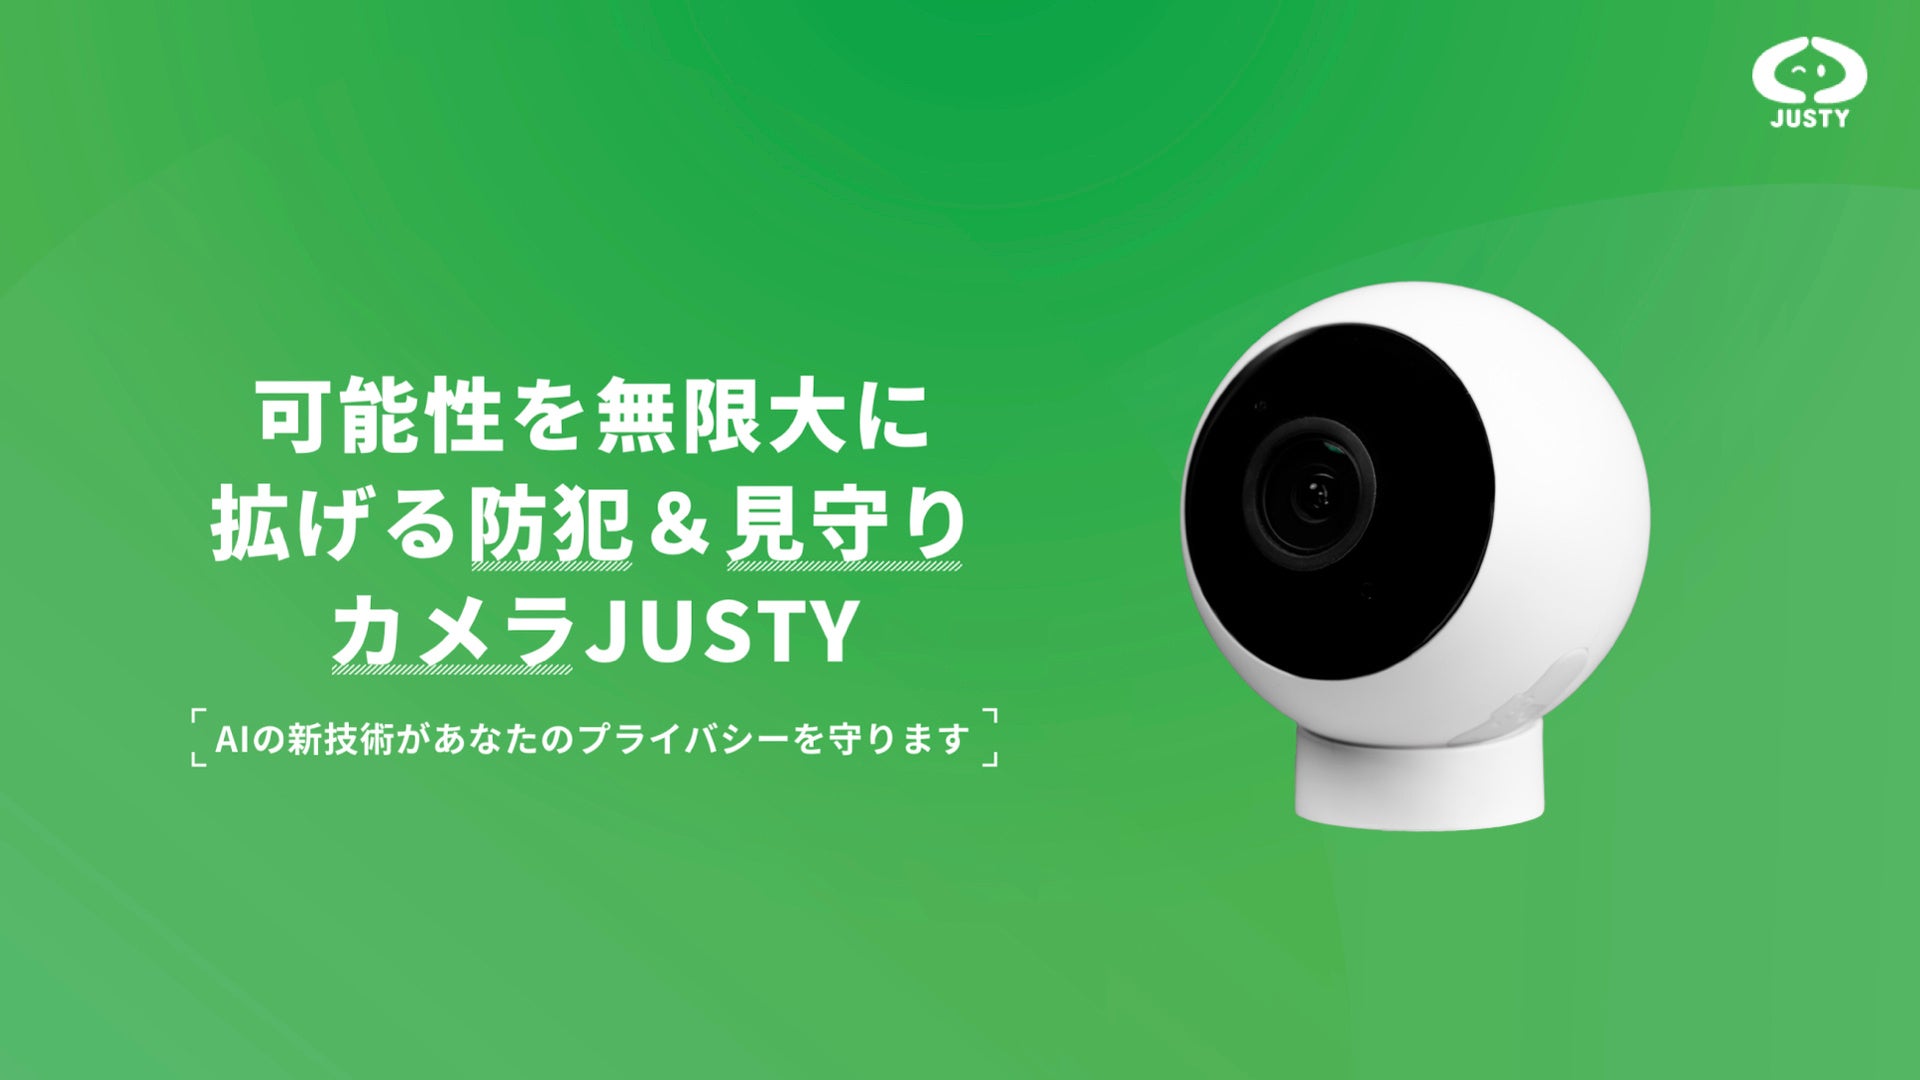 YouTube Live配信できるAI防犯カメラを9,900円(カメラ無料, 月額825円)で販売開始 - 誰でも簡単にライブ配信ができるJUSTY Live(ジャスティライブ)AIスマートカメラのサブ画像1